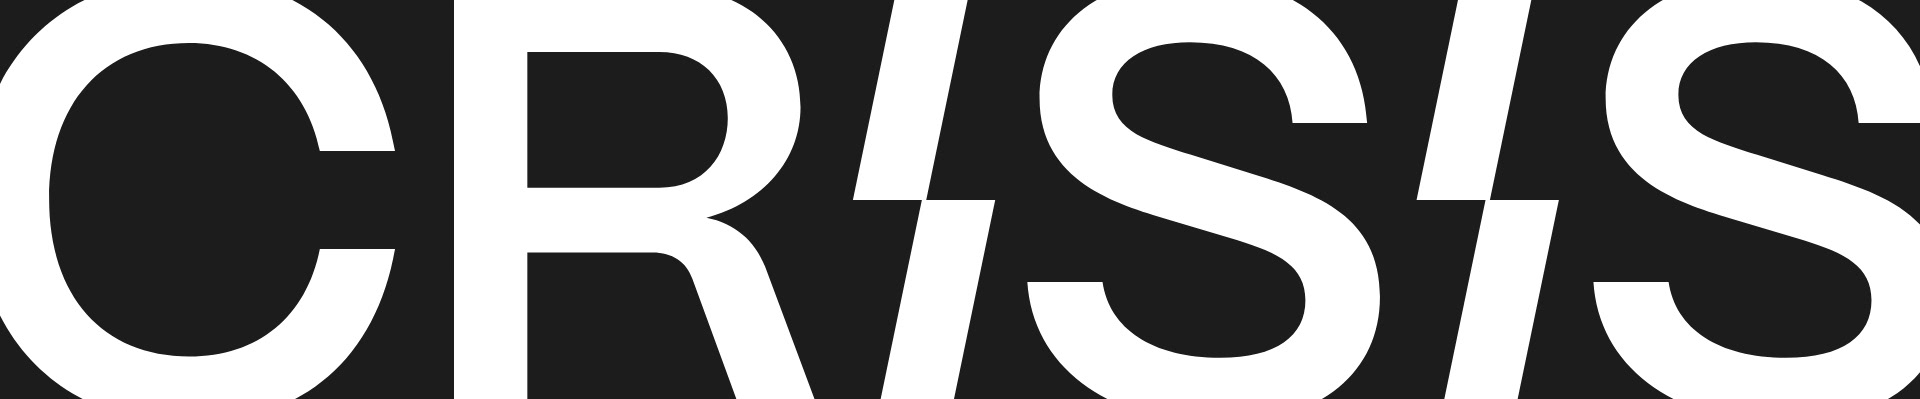 Crisis Design Studio's profile banner